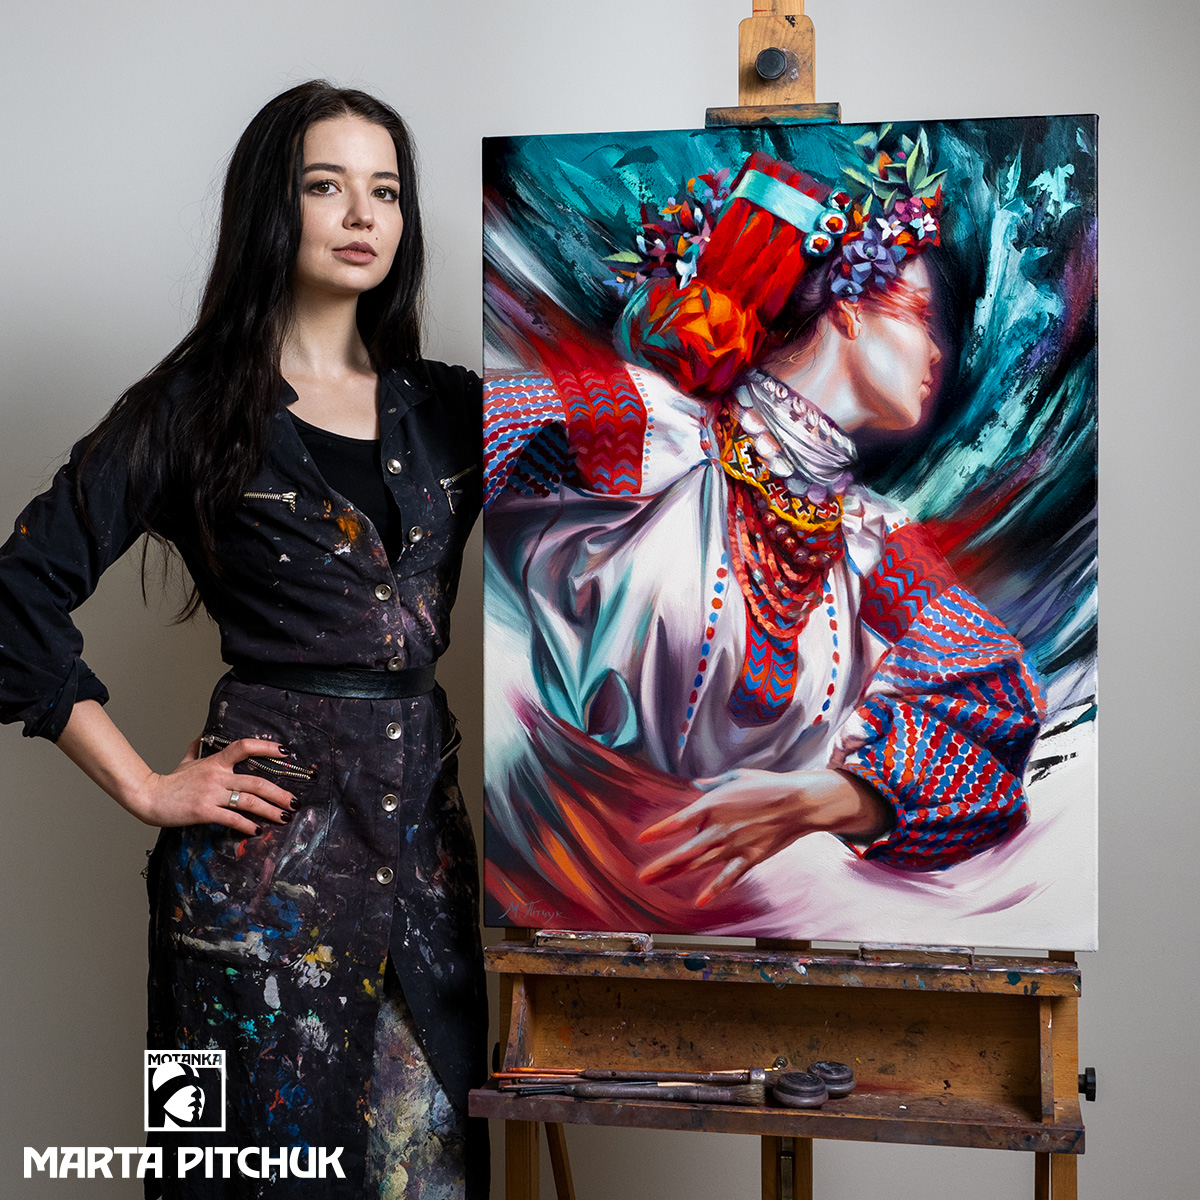 Франківська художниця продала свою картину за 430 тисяч грн, щоб допомогти “Азову”